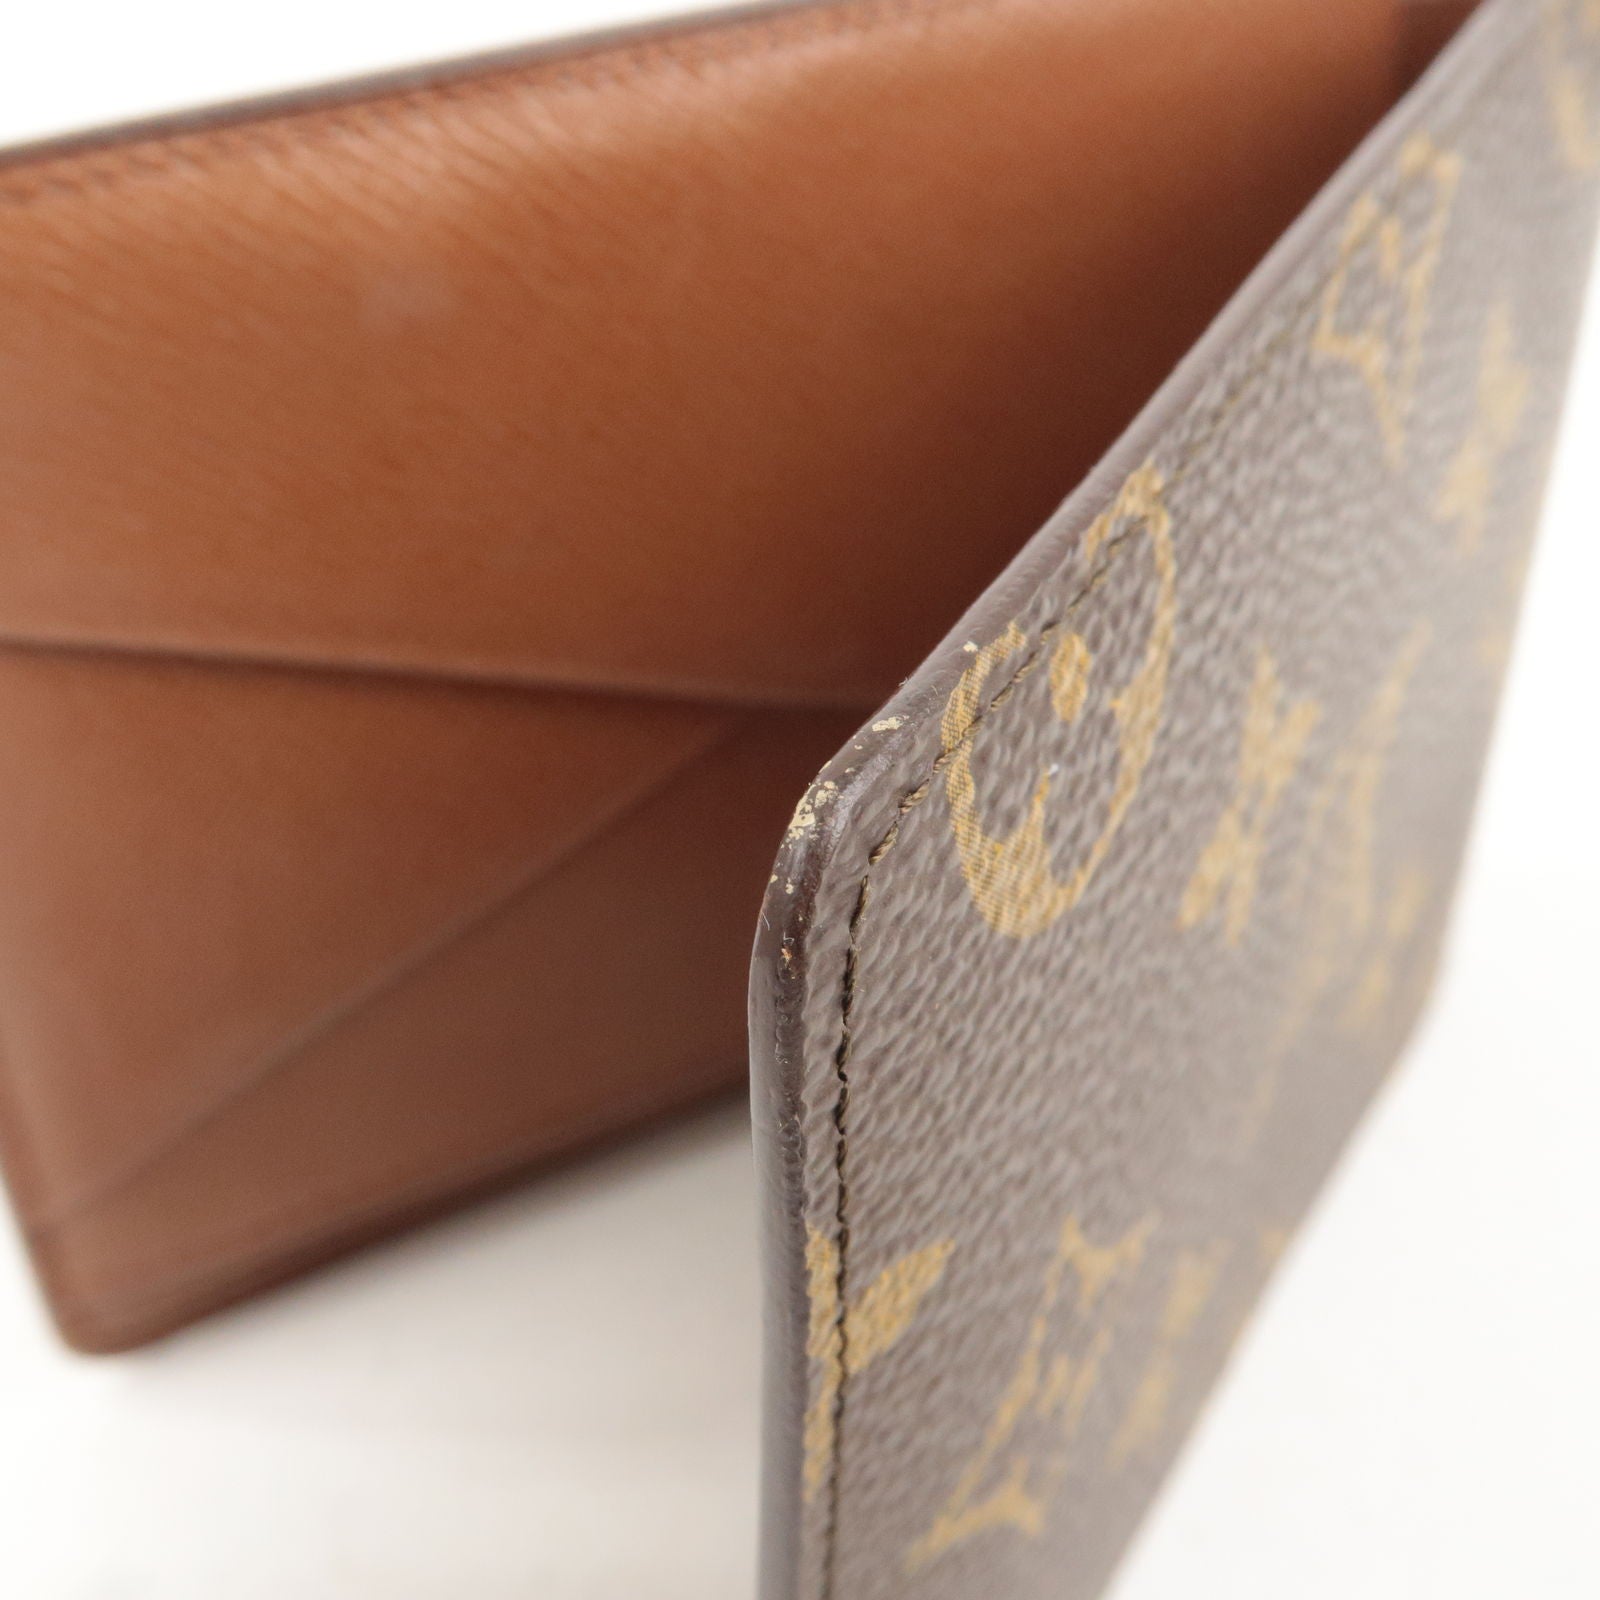  Louis Vuitton Monogram Multiple Mens Wallet M60895